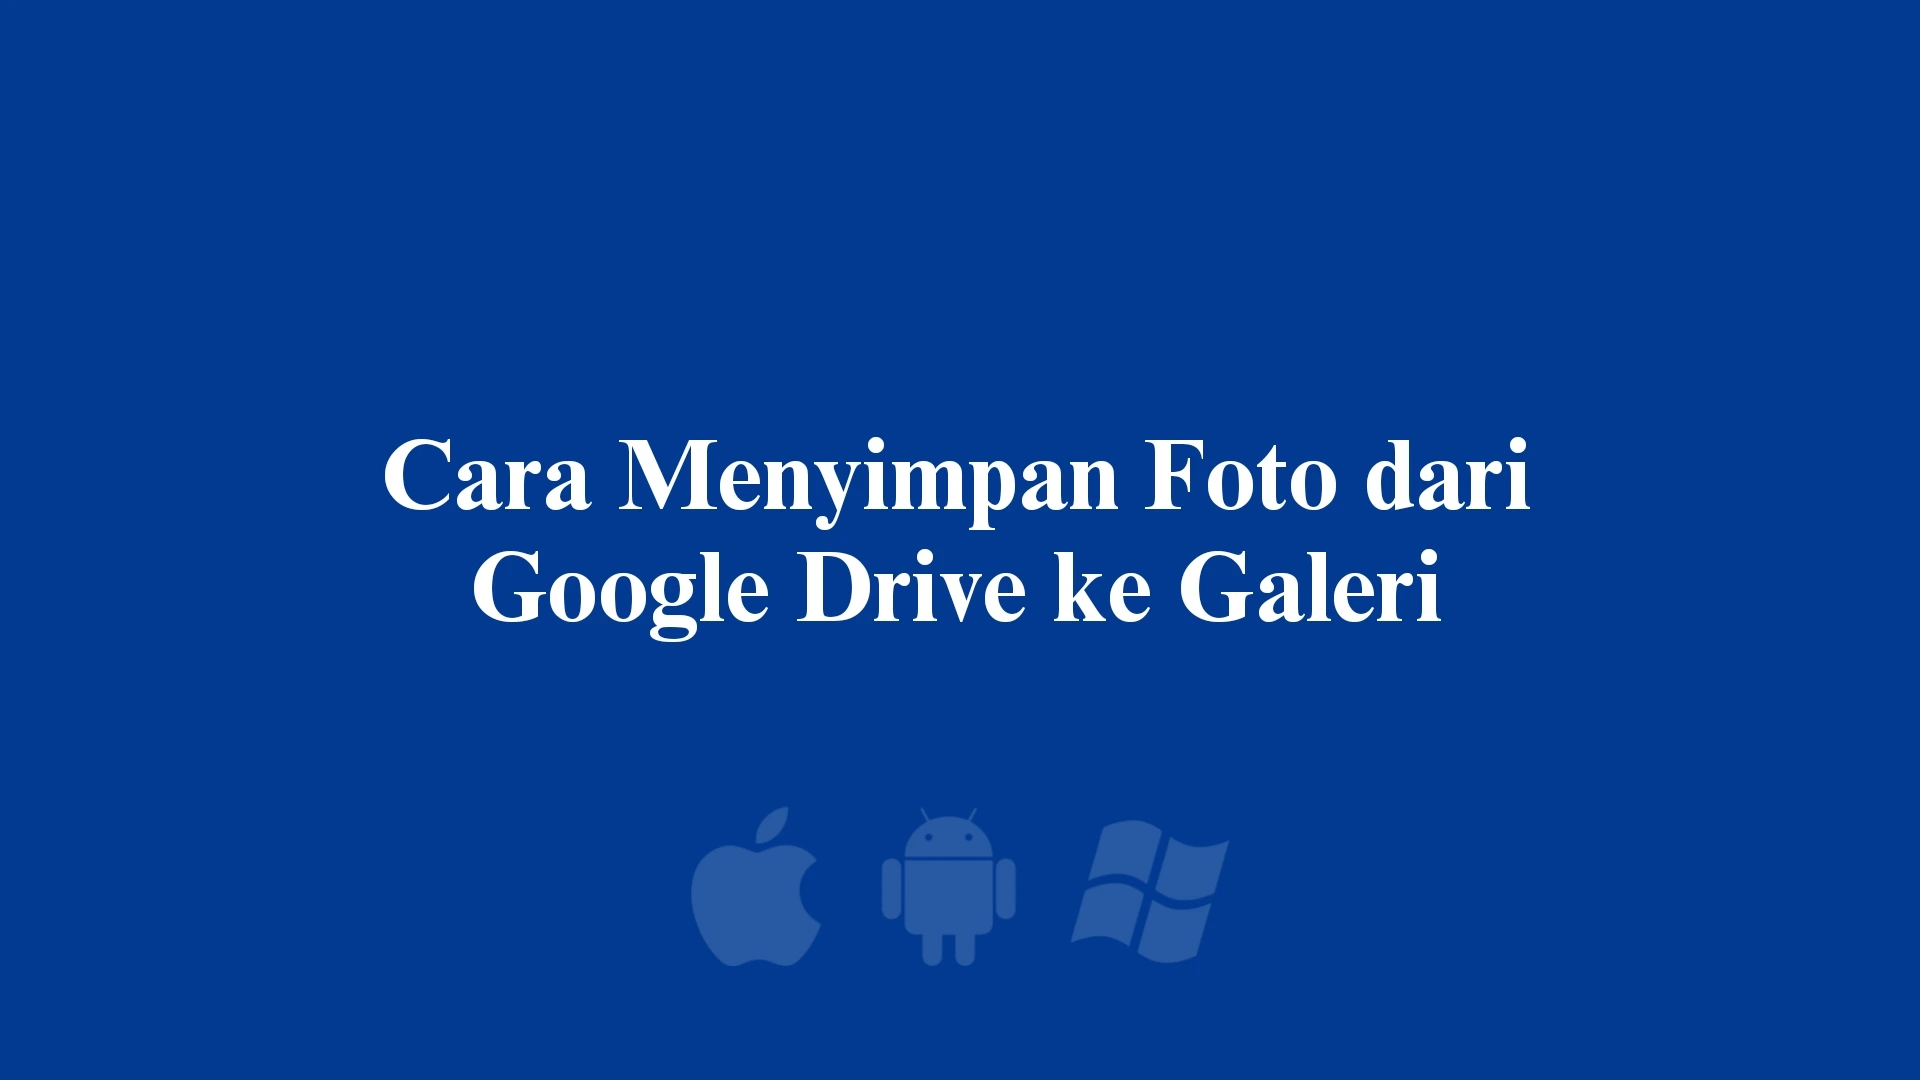 Cara Menyimpan Foto dari Google Drive ke Galeri